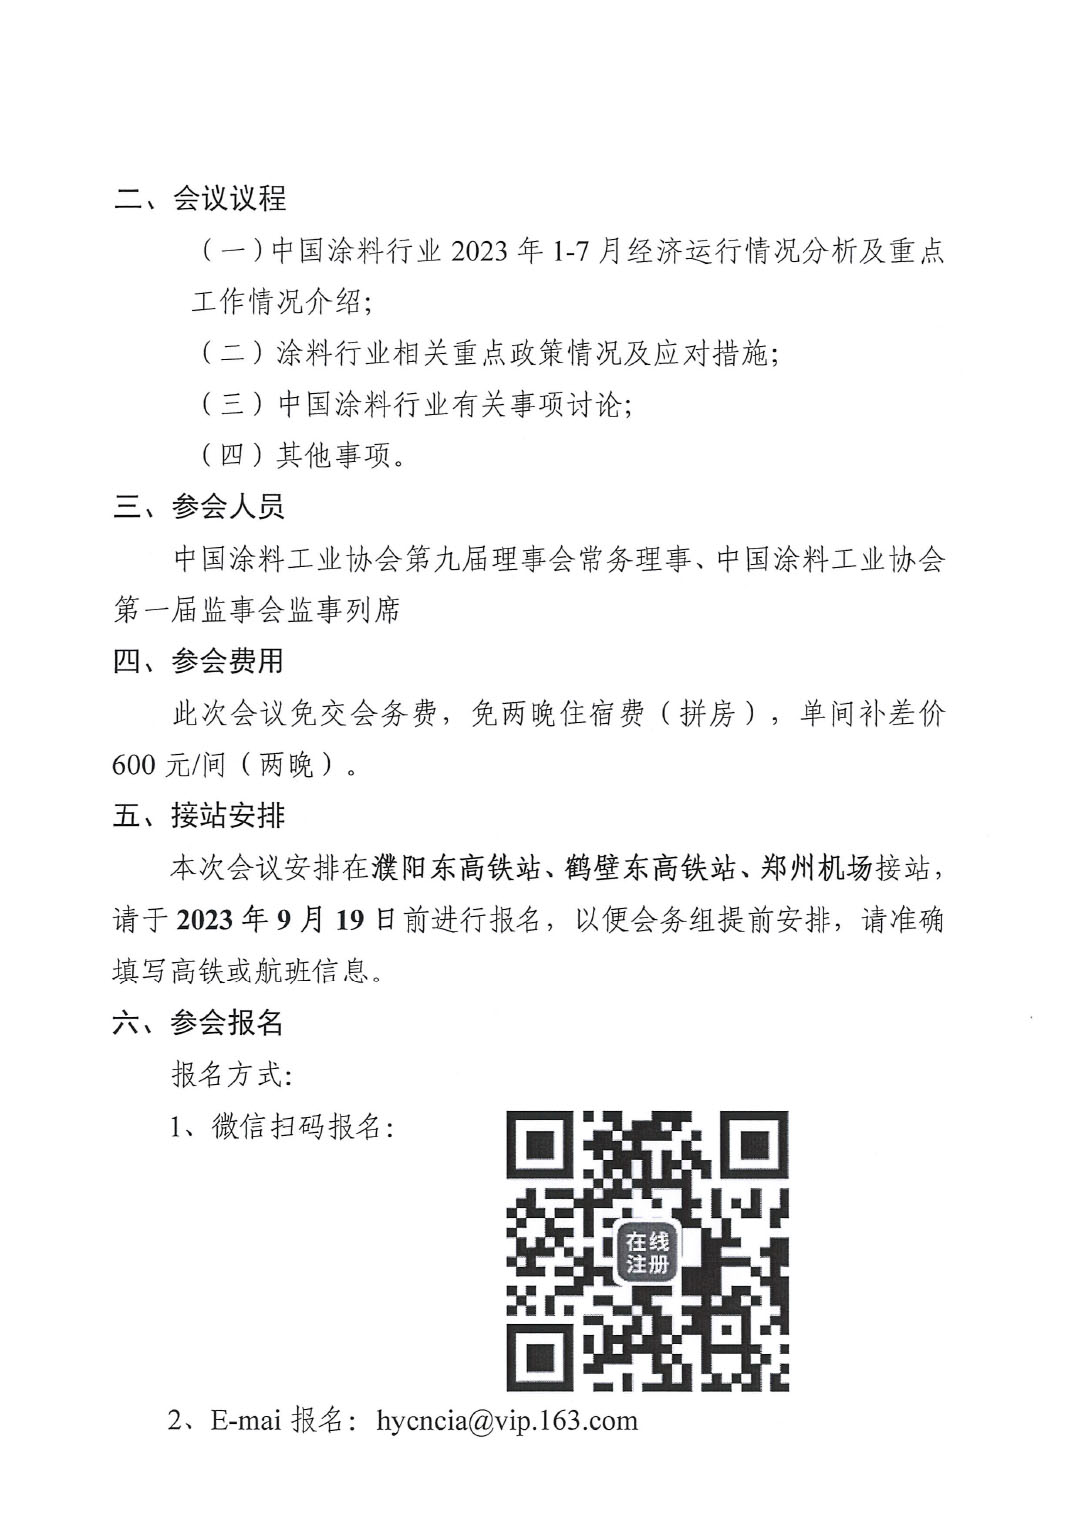 01关于召开中国涂料工业协会第九届二次常务理事会的通知(1)-2